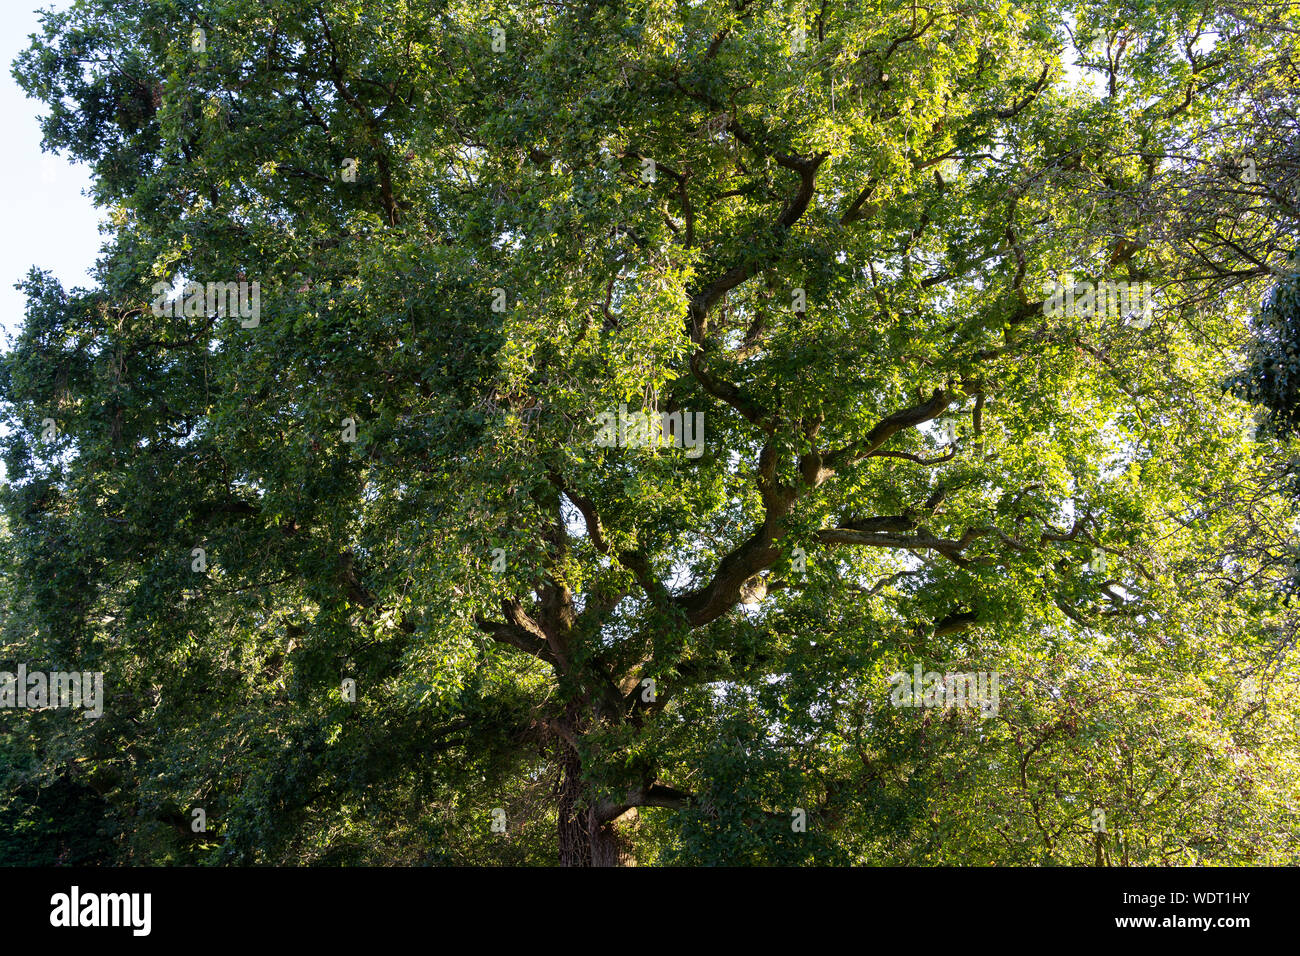 Quercus pontica - allgemein als die Trauben-eiche bekannt, Cornish Eiche oder traubeneichenholz Eiche - in voller Blätter im August am Nachmittag Sonne in England Stockfoto